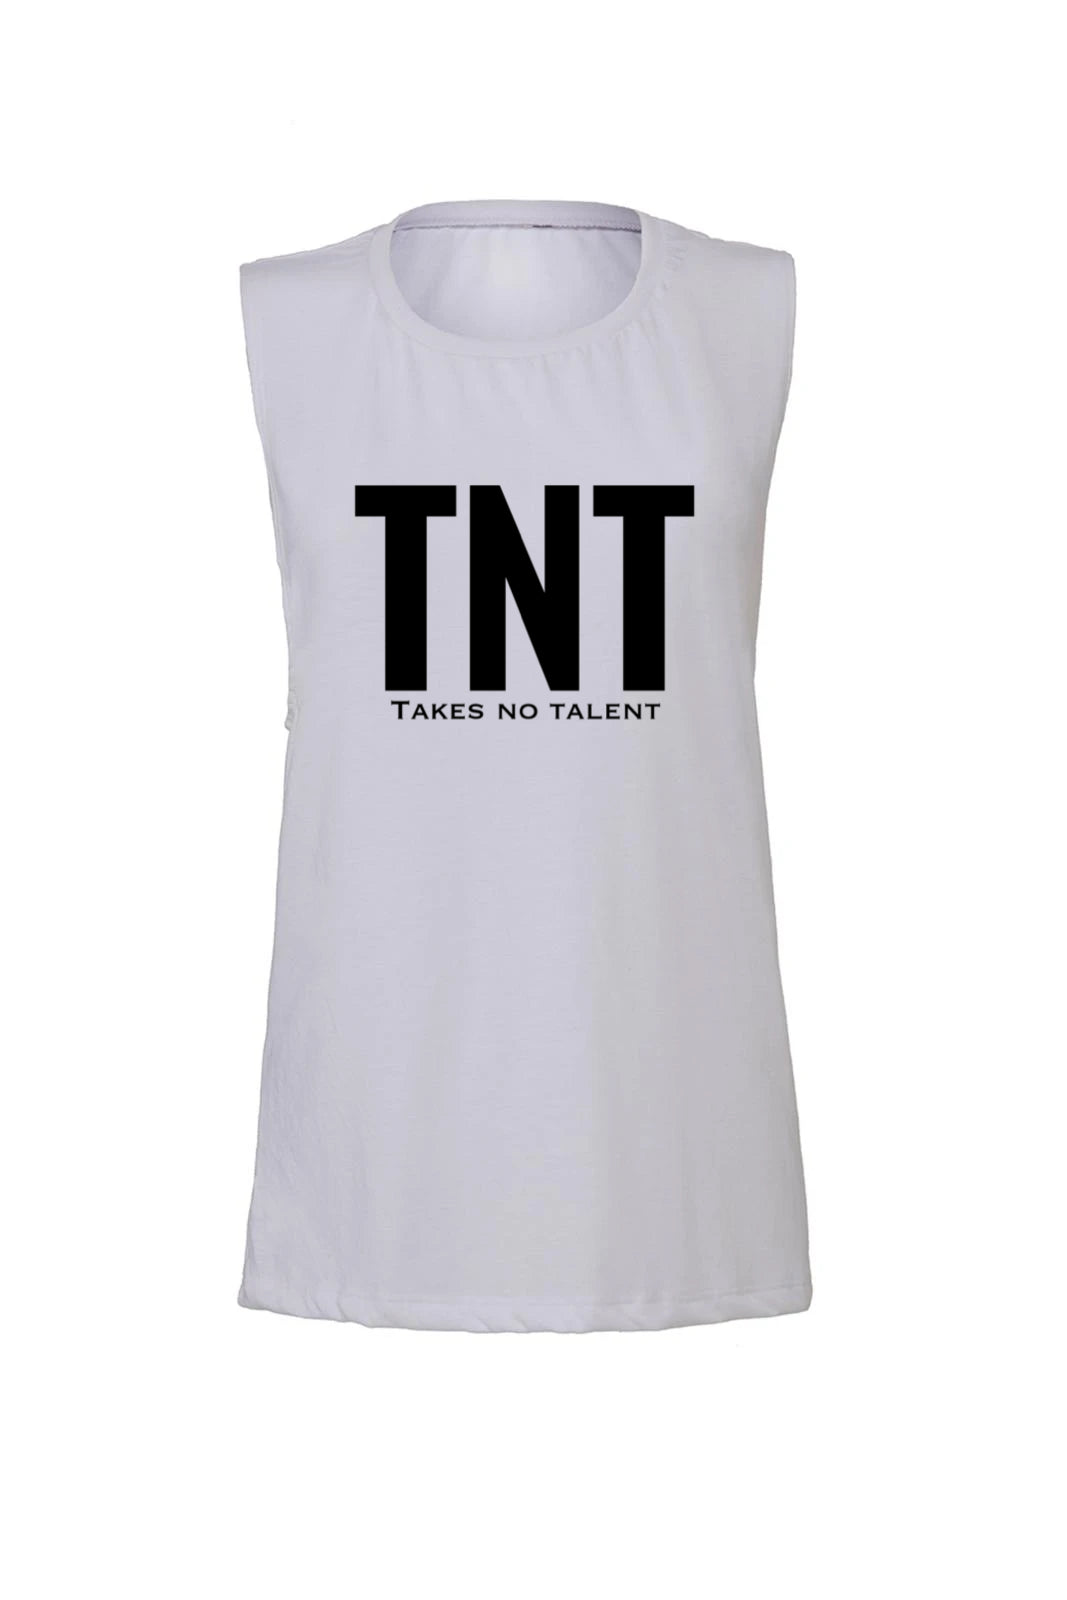 Project 100 “TNT” Scoop Muscle Tank